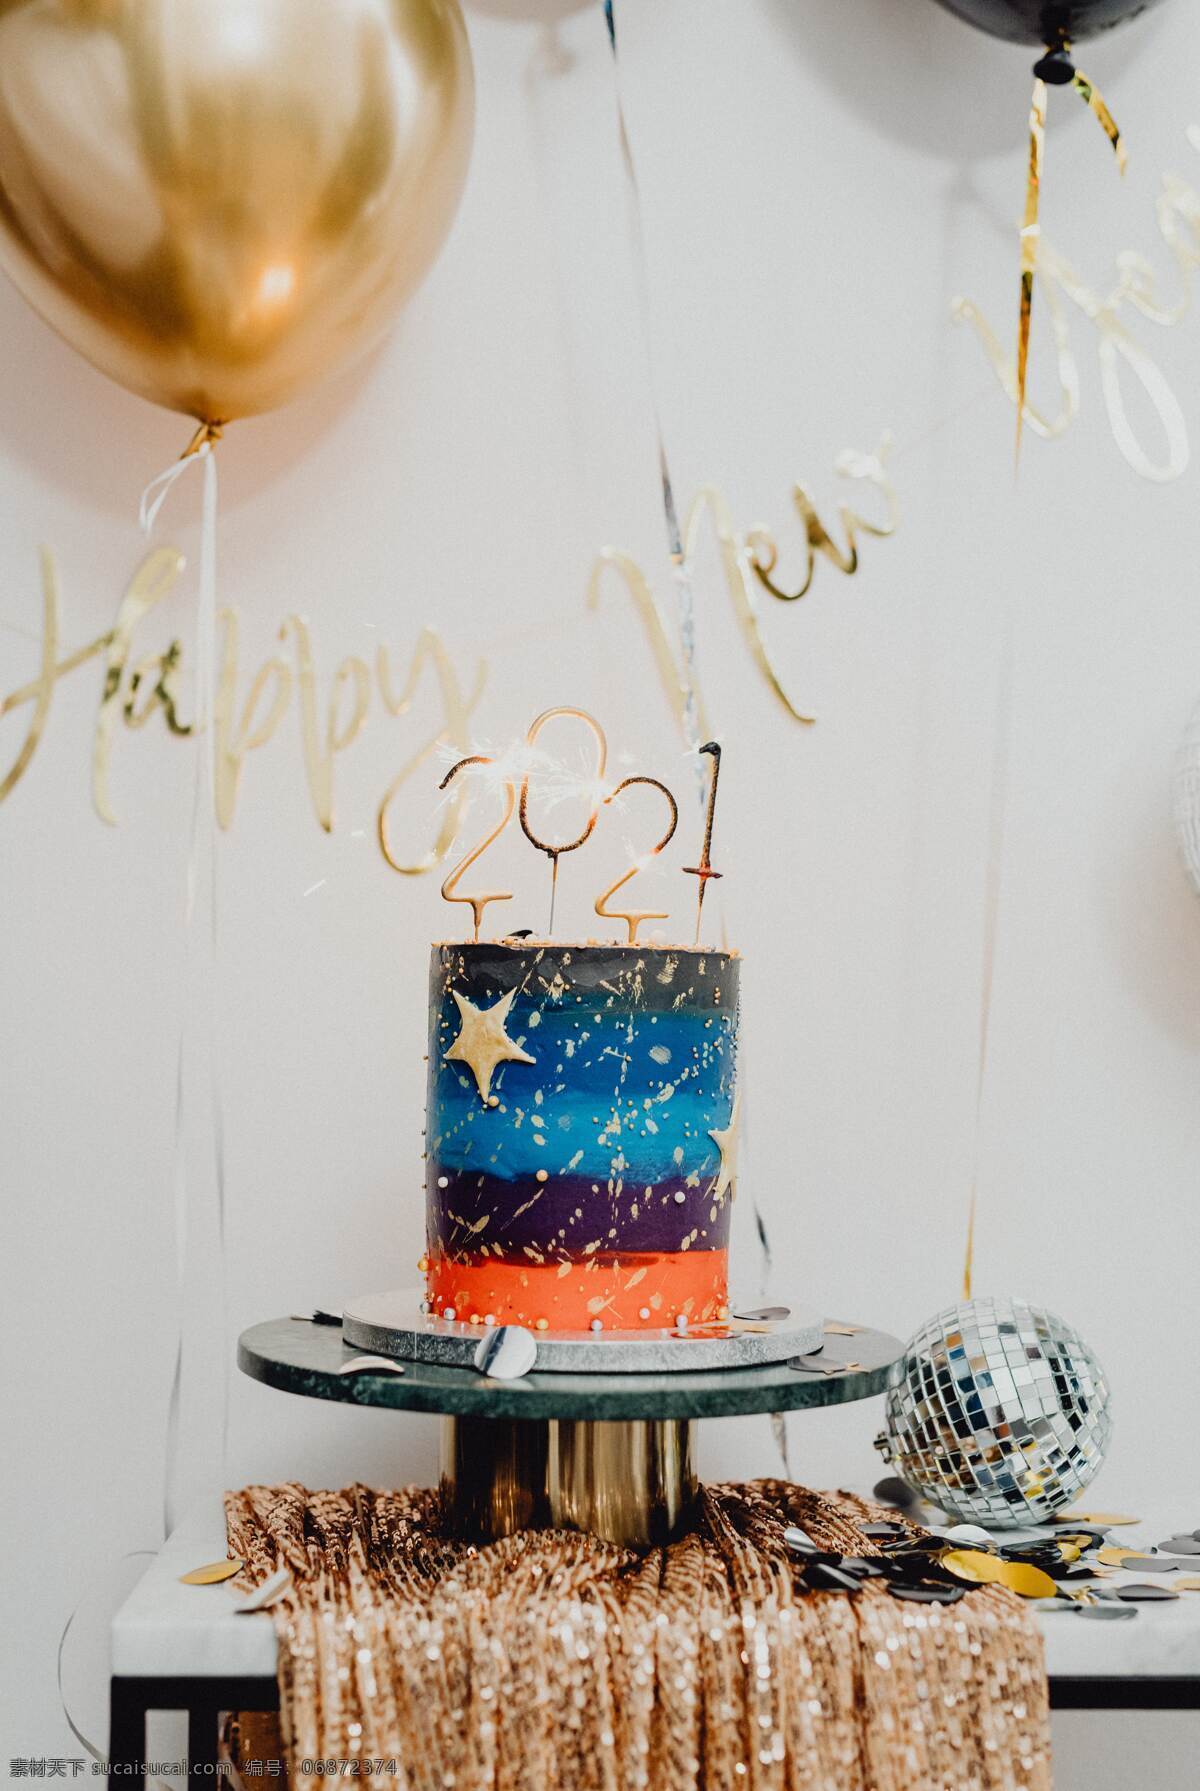 2021 年 新年 蛋糕 星空蛋糕 新年蛋糕 庆祝新年场景 2021快乐